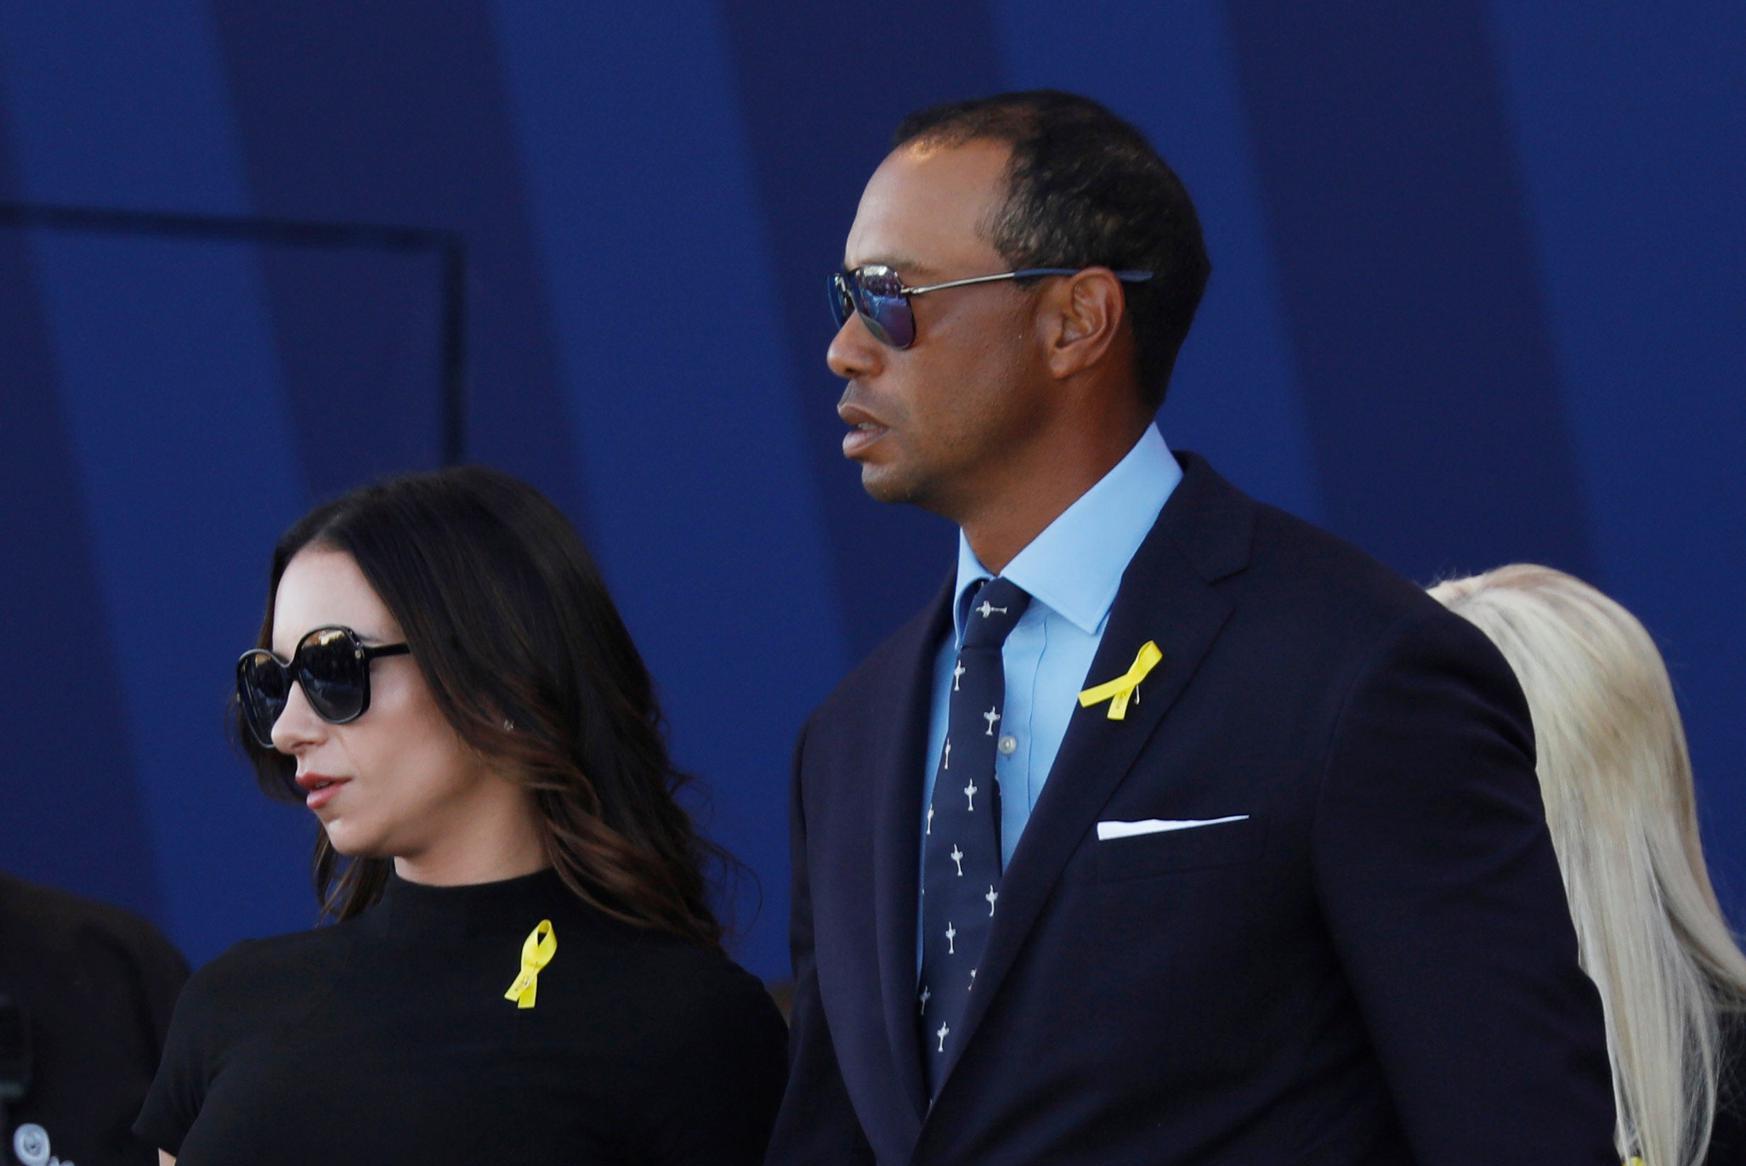 Hij nam zelfs haar huisdieren mee” ex-vriendin beschuldigt Tiger Woods van seksuele intimidatie en eist 30 miljoen dollar schadevergoeding Het Nieuwsblad Mobile